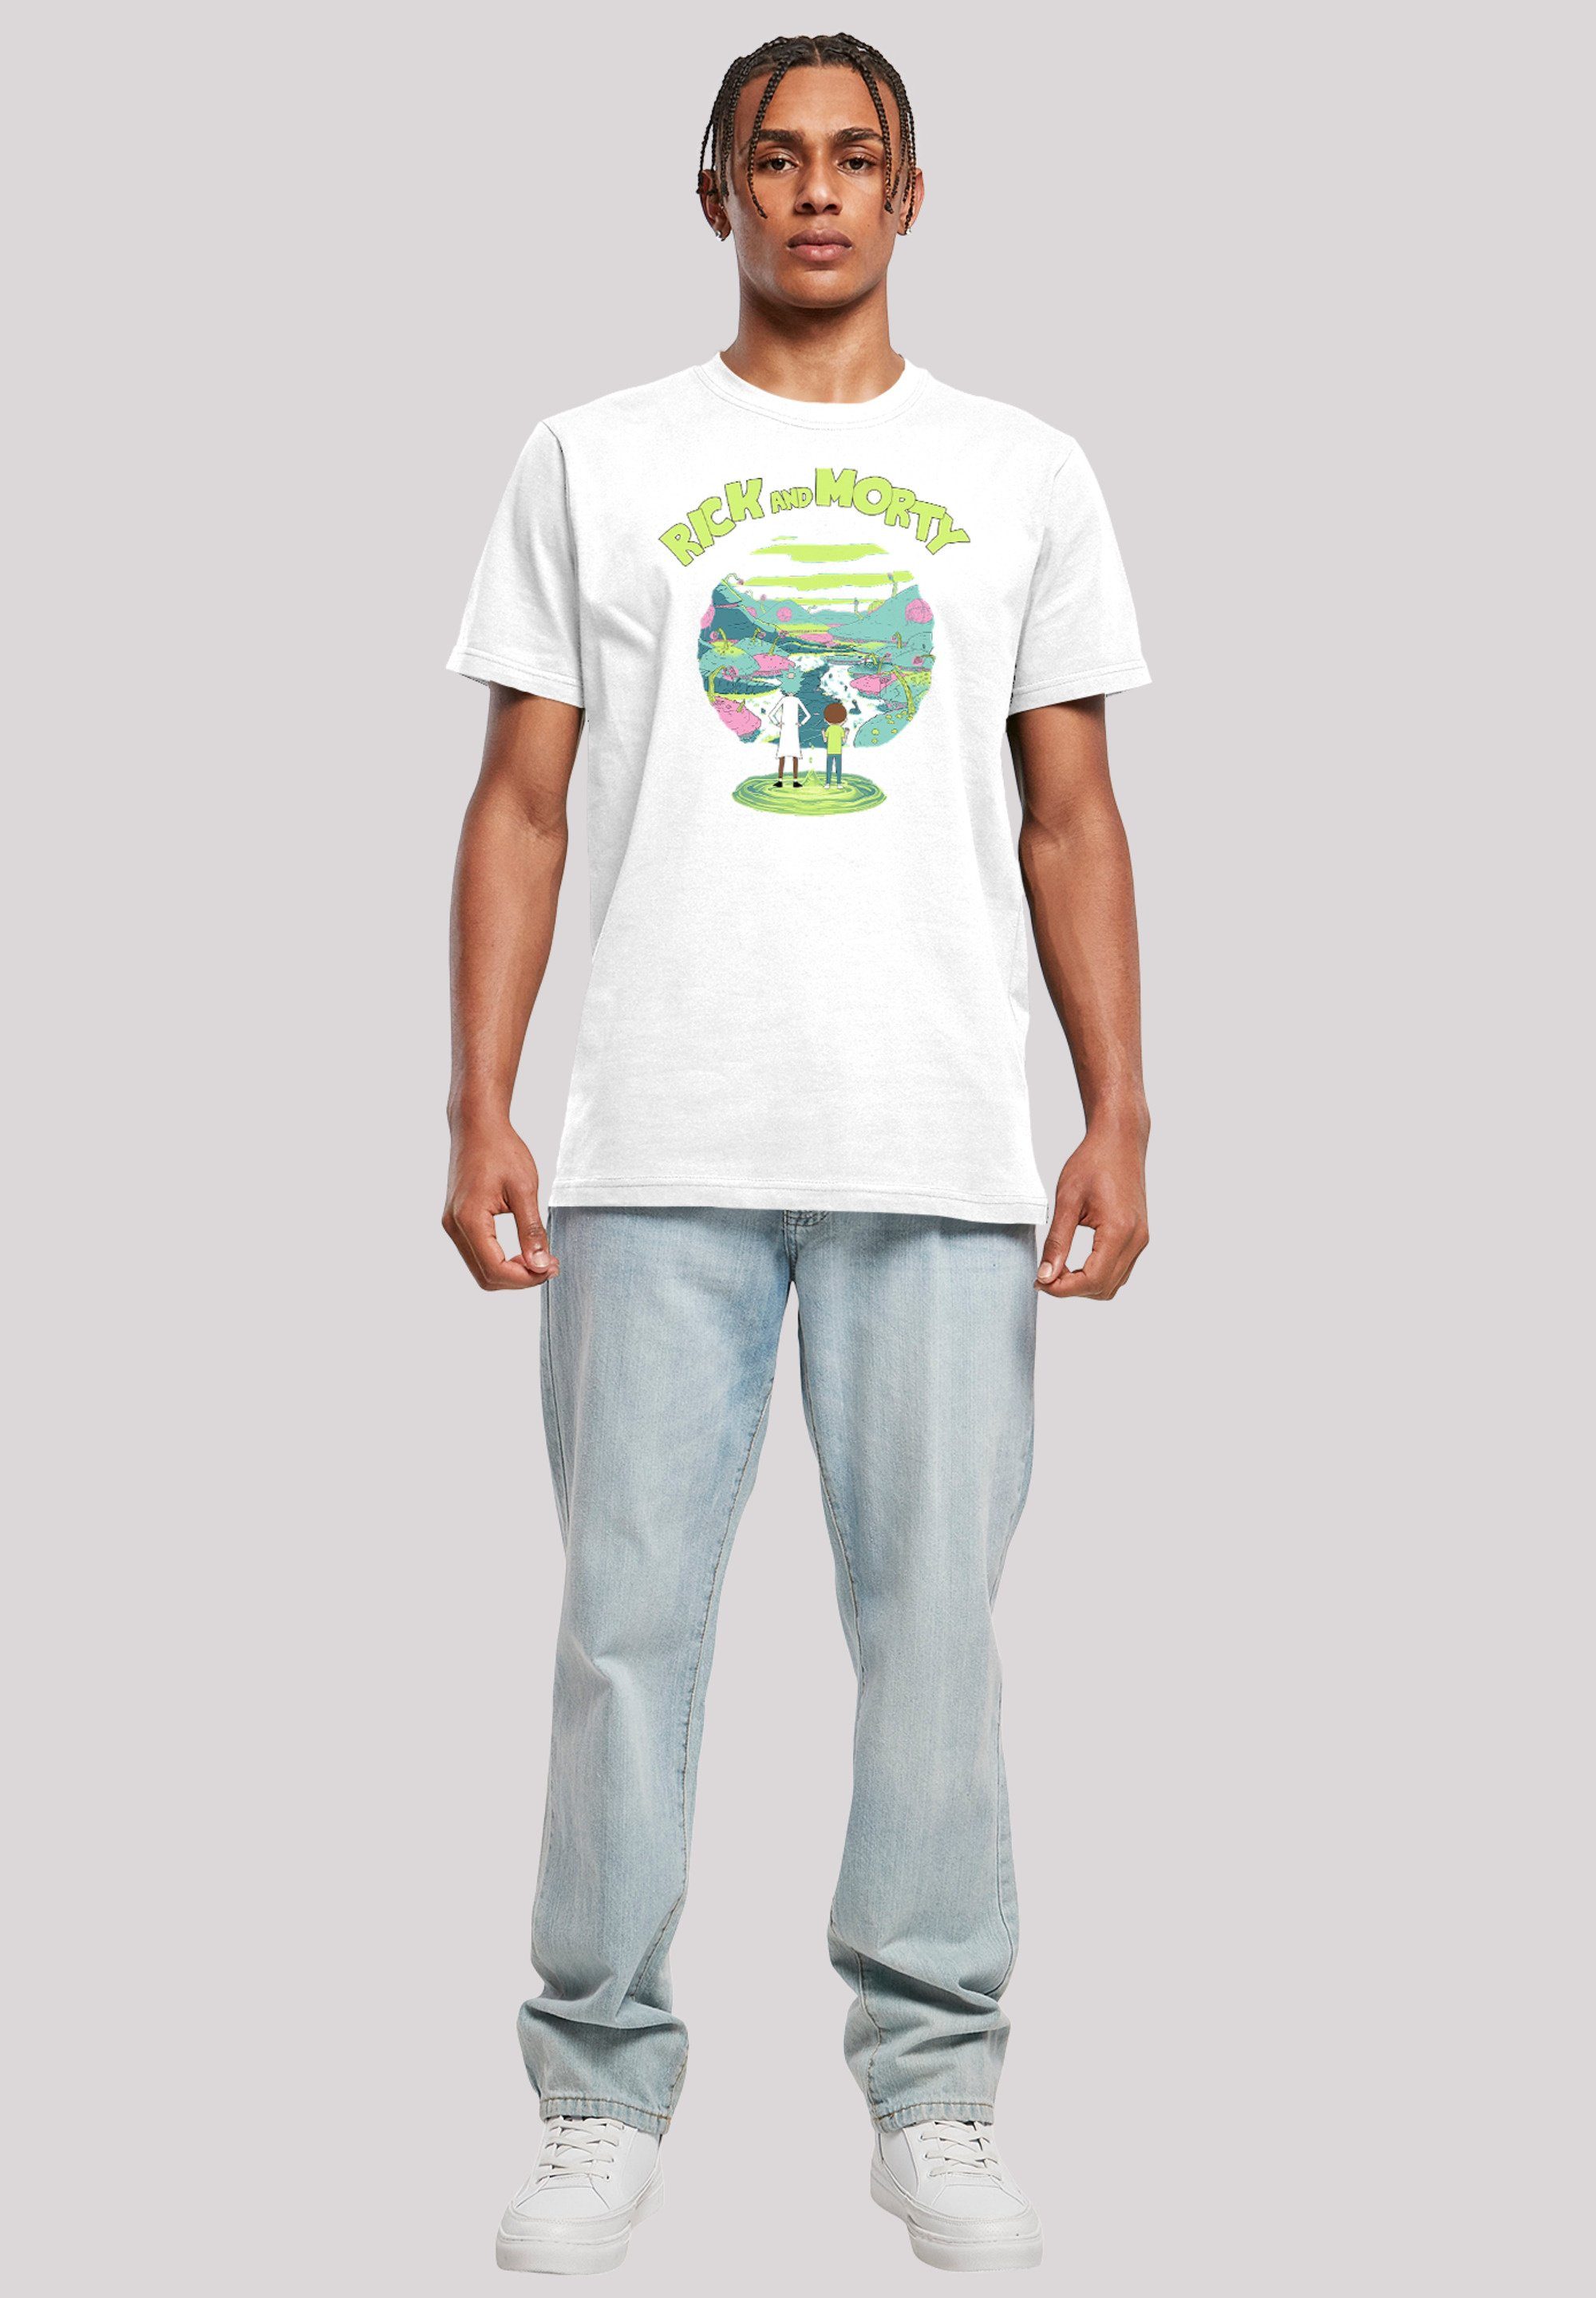 Portal Herren,Premium Morty Rick and T-Shirt F4NT4STIC weiß Merch,Regular-Fit,Basic,Bedruckt